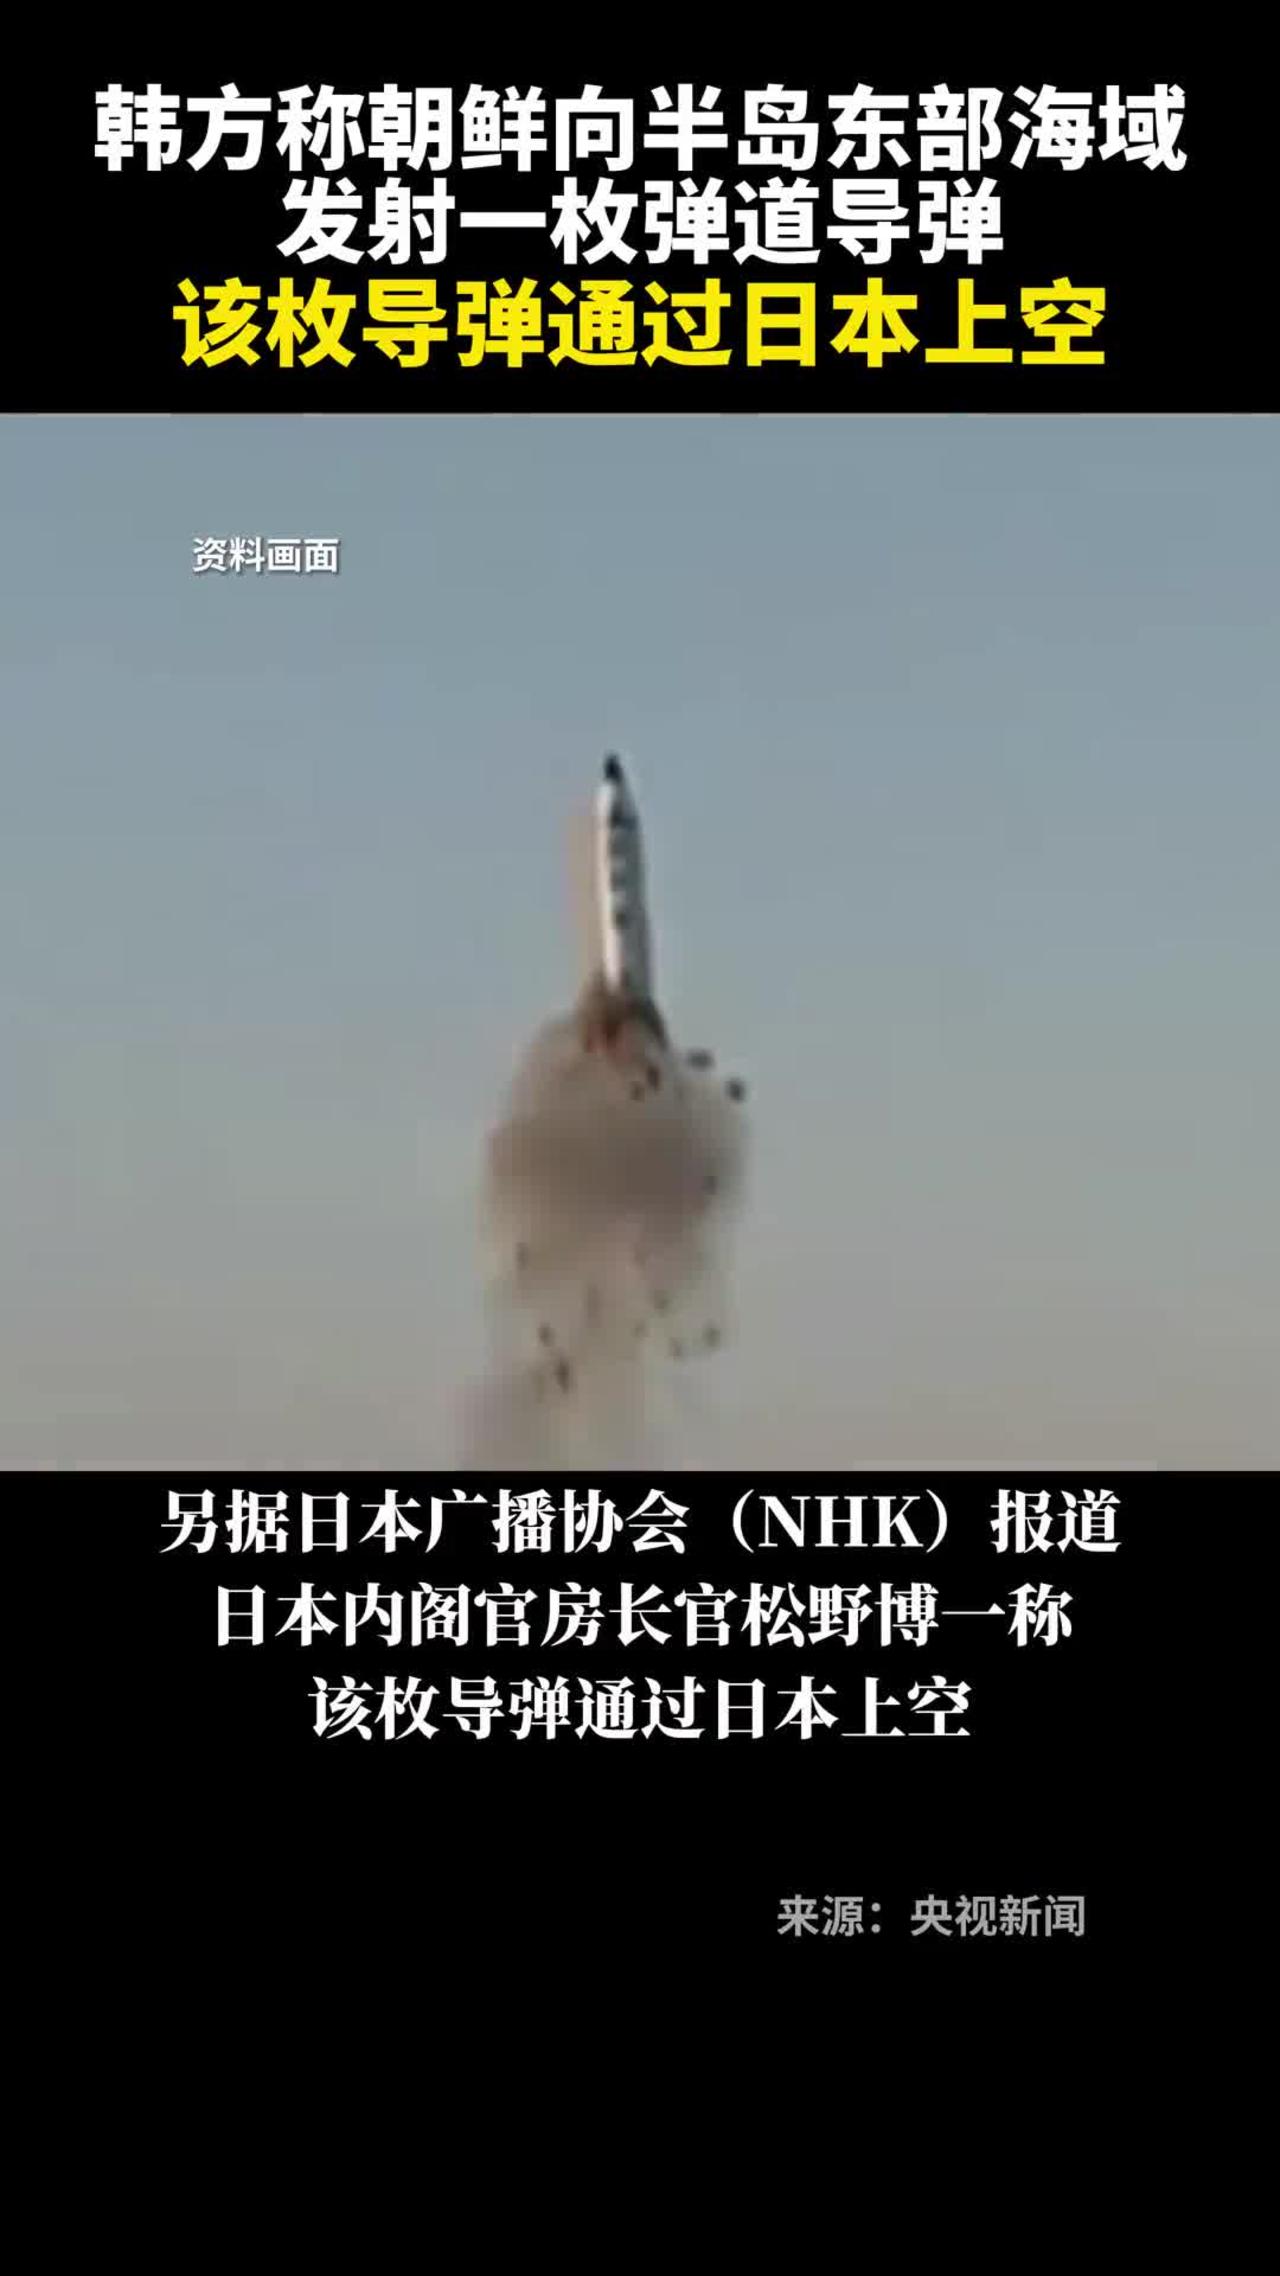 South Korea says North Korea launches a ballistic missile.